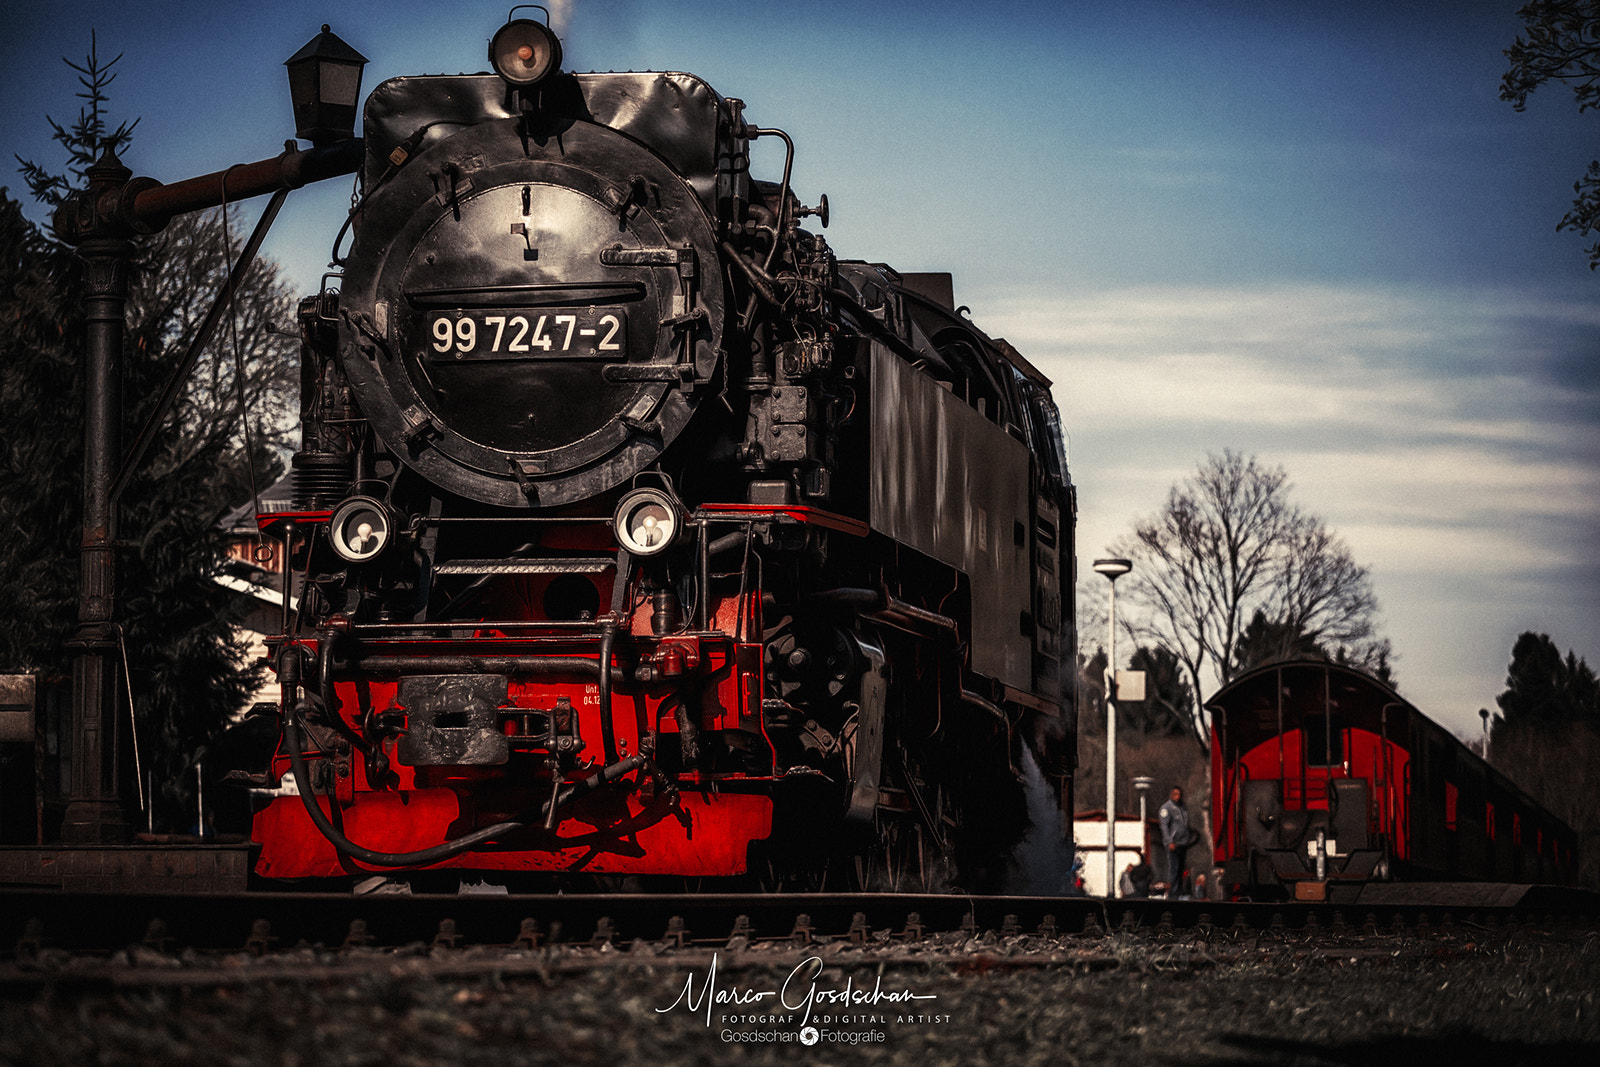 General 1600x1067 Marco Gosdschan steam locomotive vehicle train